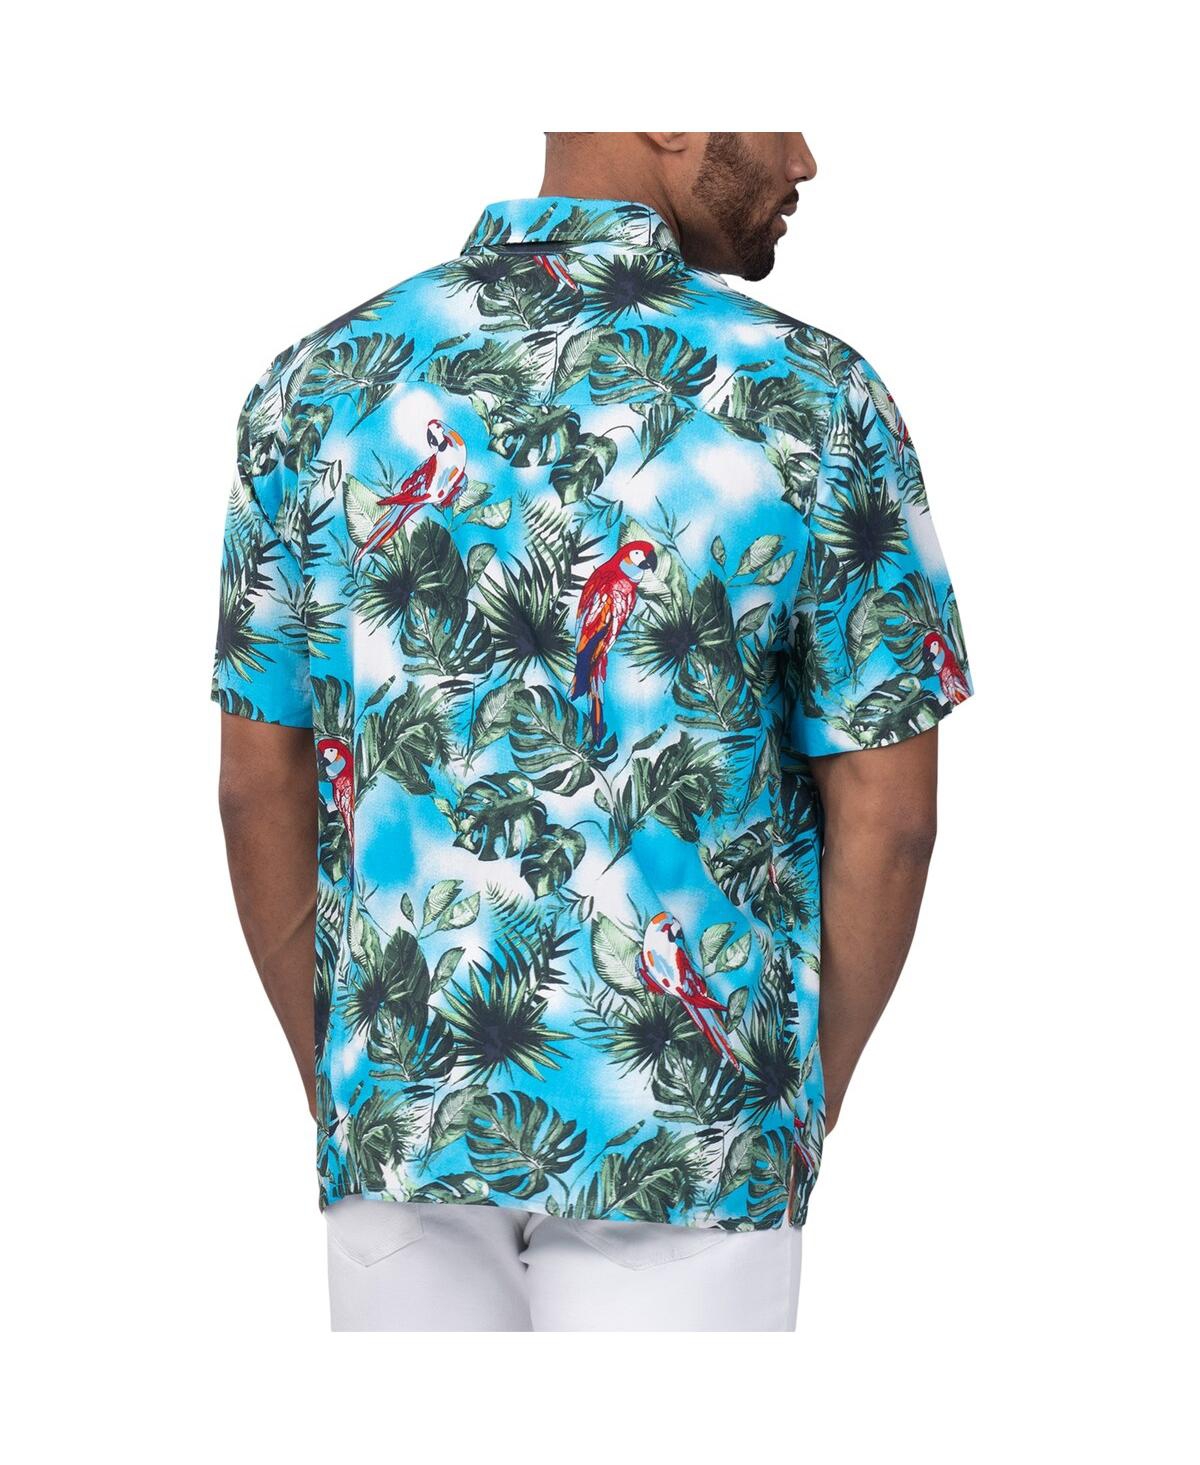 Shop Margaritaville Men's  Light Blue Detroit Lions Jungle Parrot Party Button-up Shirt